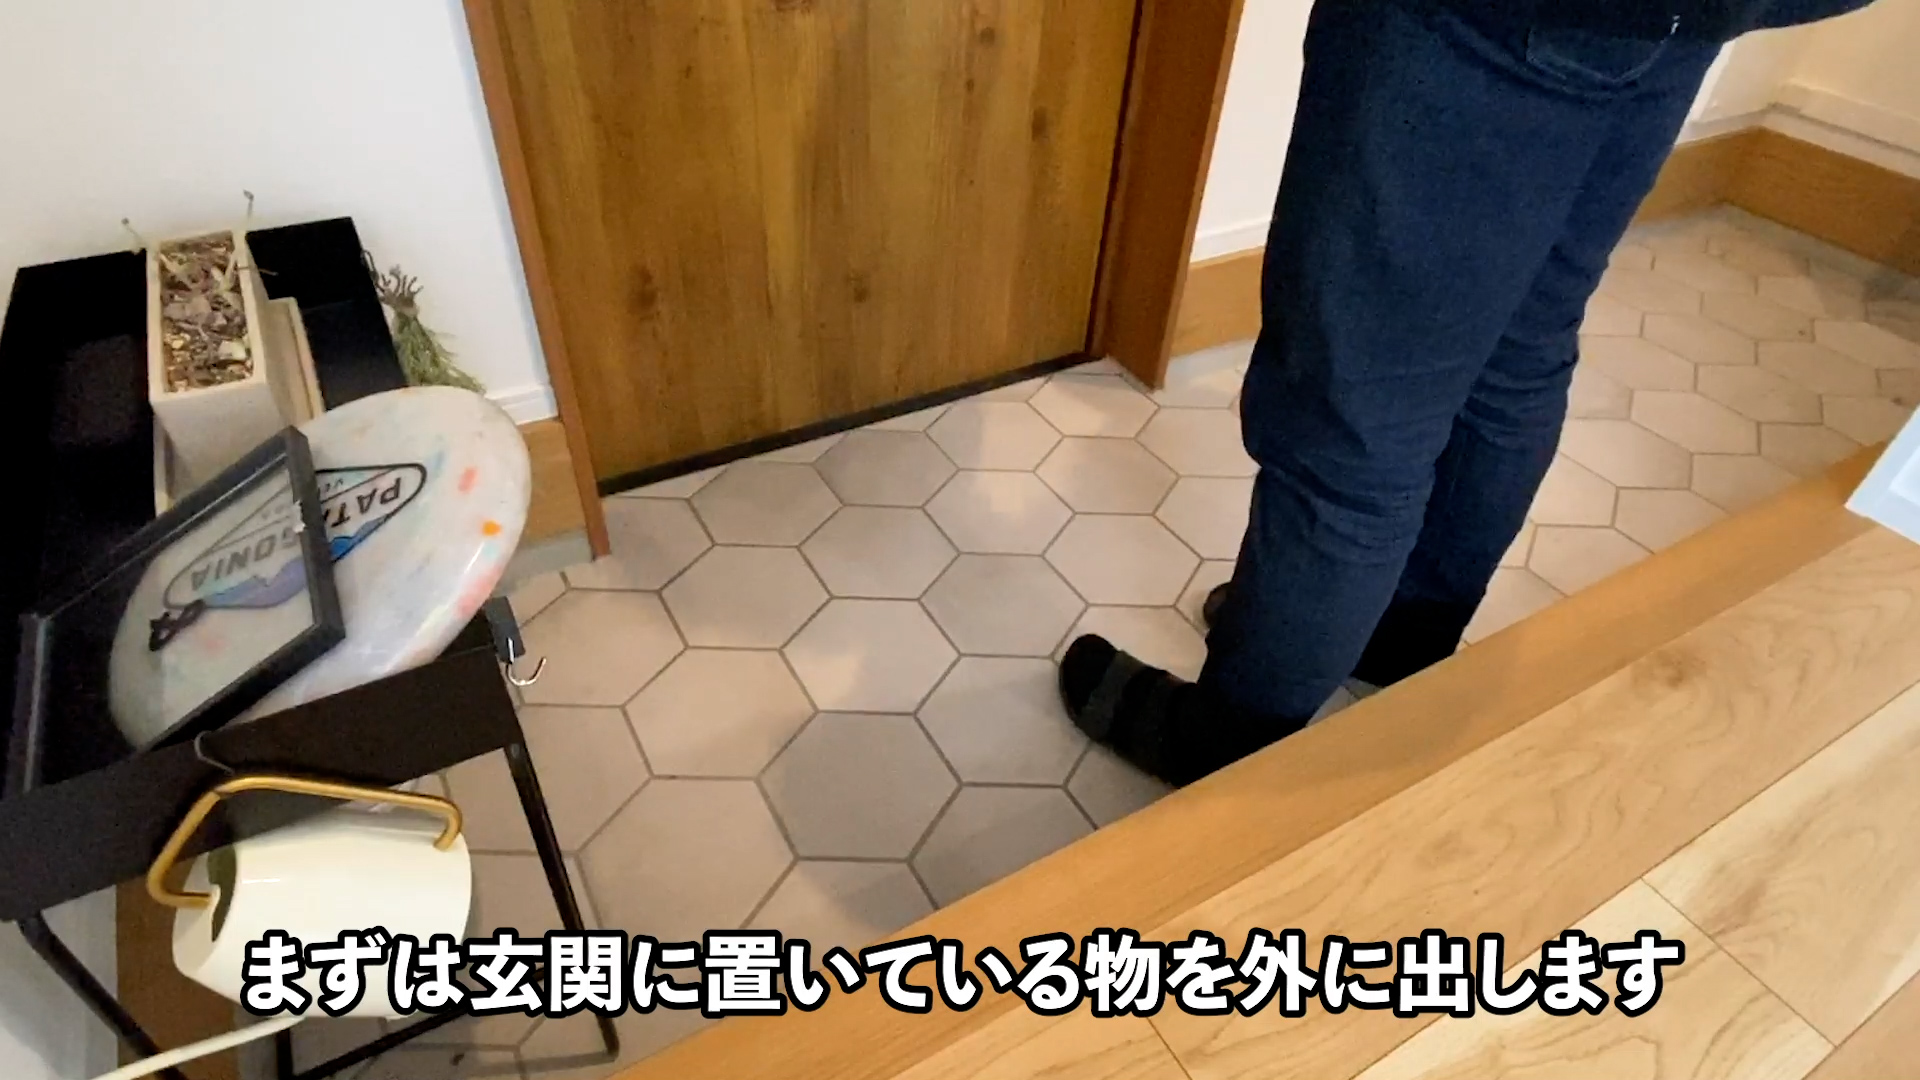 ウタマロクリーナー1本で玄関を綺麗にした方法を紹介します Hachi Home Yahoo Japan クリエイターズプログラム